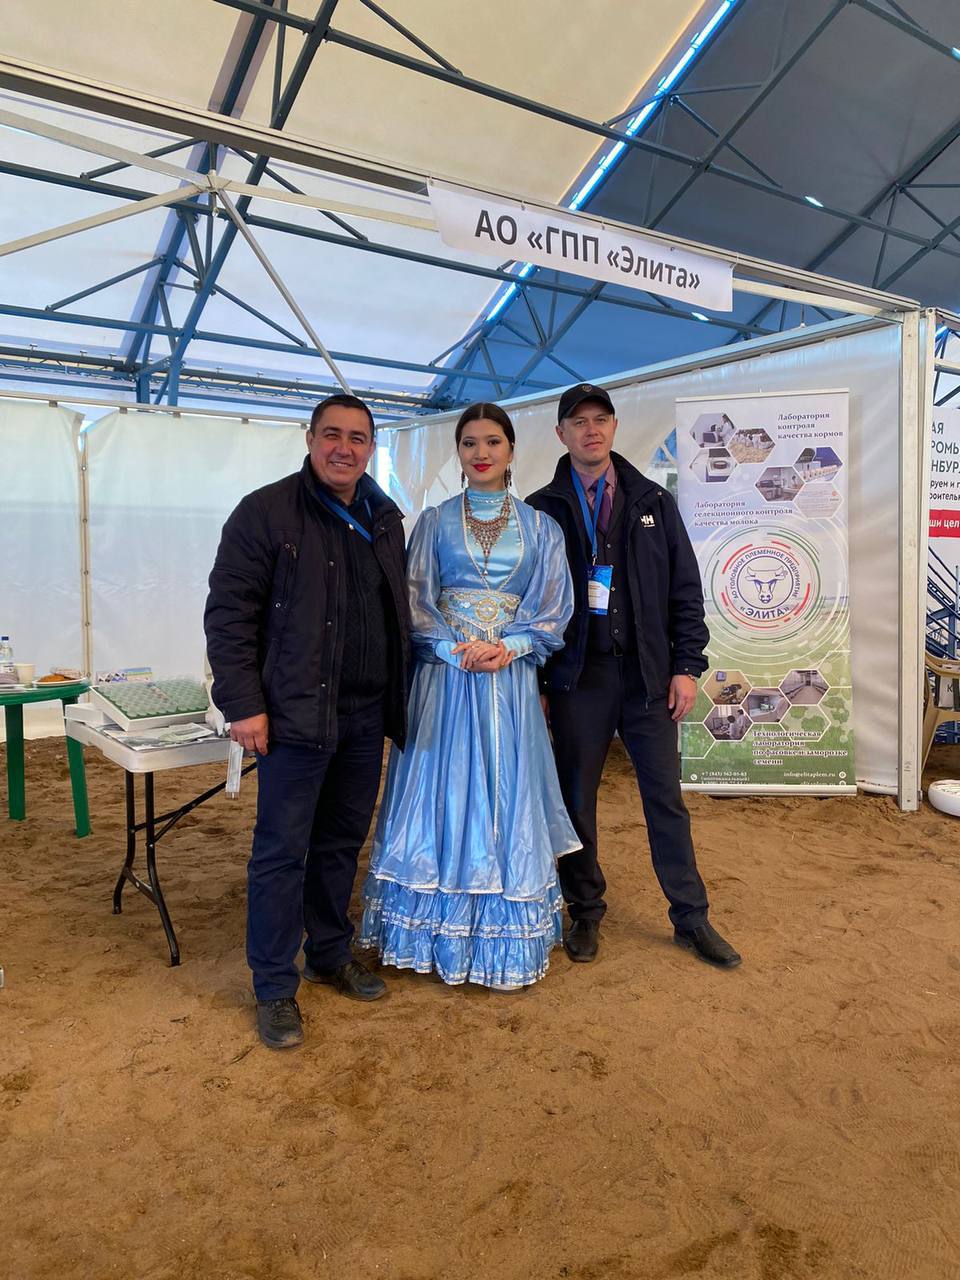 7 мая, в Кармаскалинском районе Республики Башкортостан на базе хозяйства «Артемида» проходит мероприятие «День сенажа», который организовал федеральный «Институт молока» совместно с Минсельхозом республики